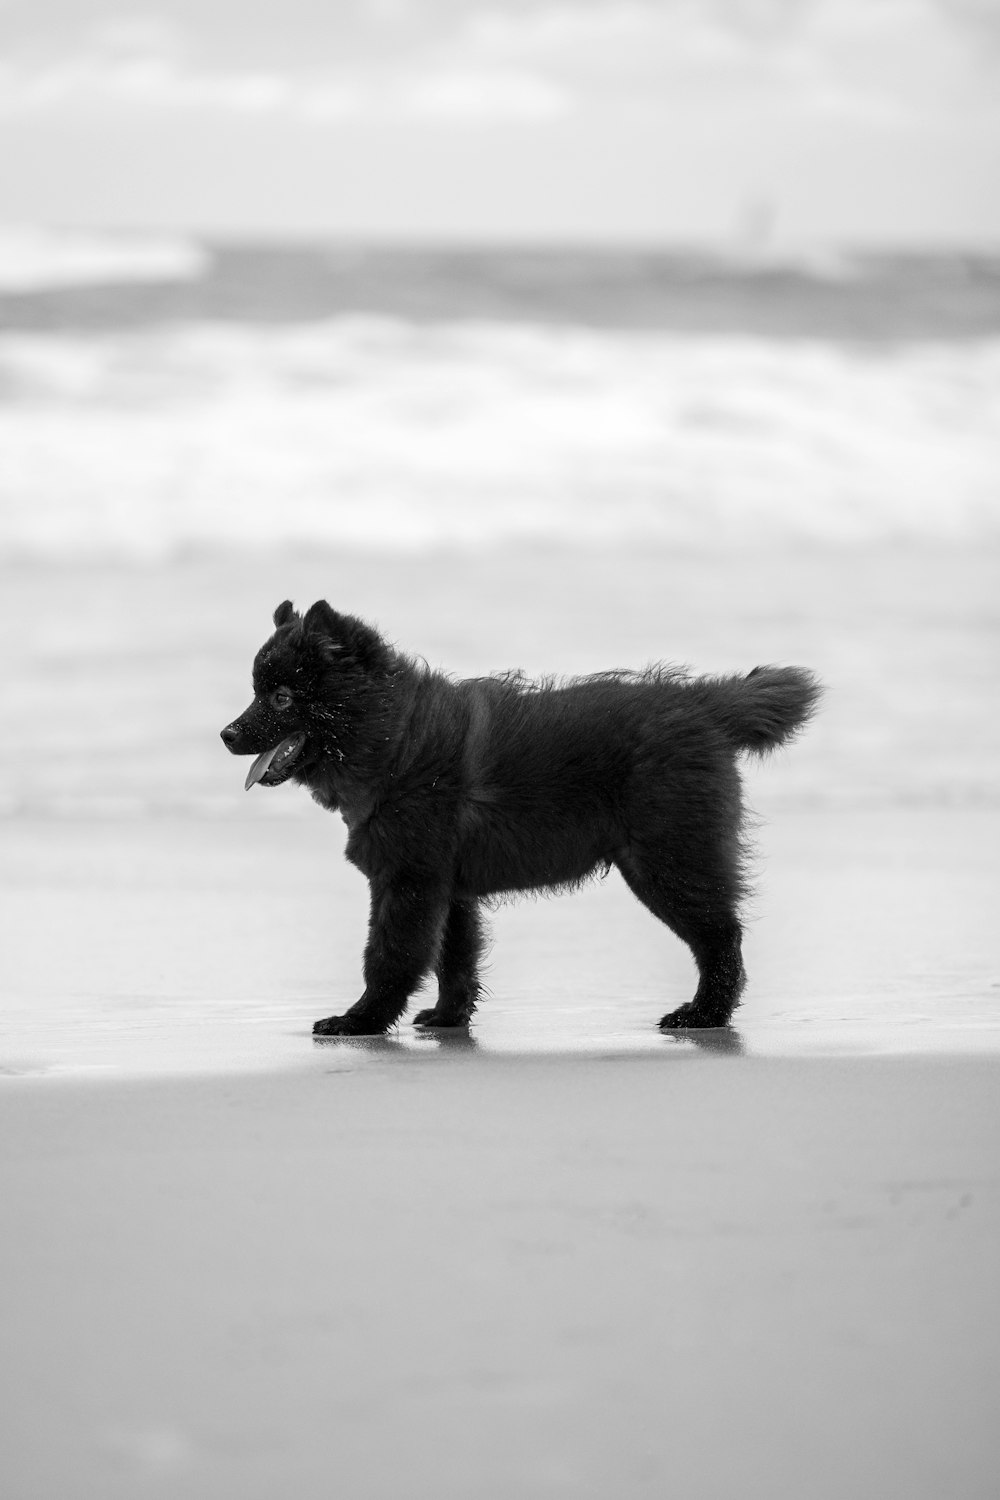 바다 옆 해변 꼭대기에 서 있는 검은 개